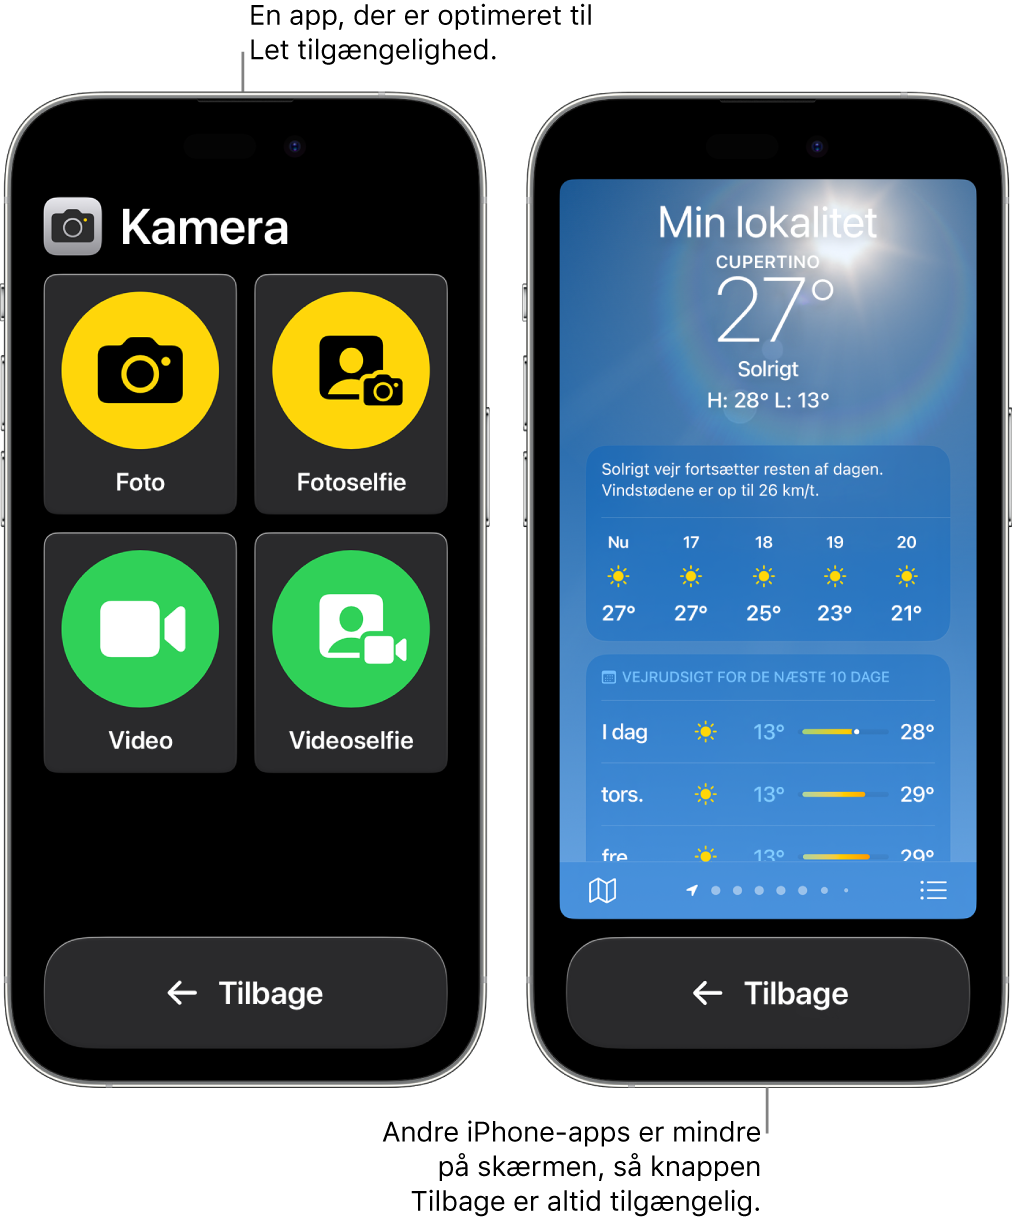 To iPhone-enheder i Let tilgængelighed. En iPhone viser en app, der er udviklet til Let tilgængelighed, med et stort net med knapper. Den anden iPhone viser en app, der ikke er udviklet til Let tilgængelighed og har sit oprindelige design. Appen er mindre på skærmen med en stor knap Tilbage nederst.